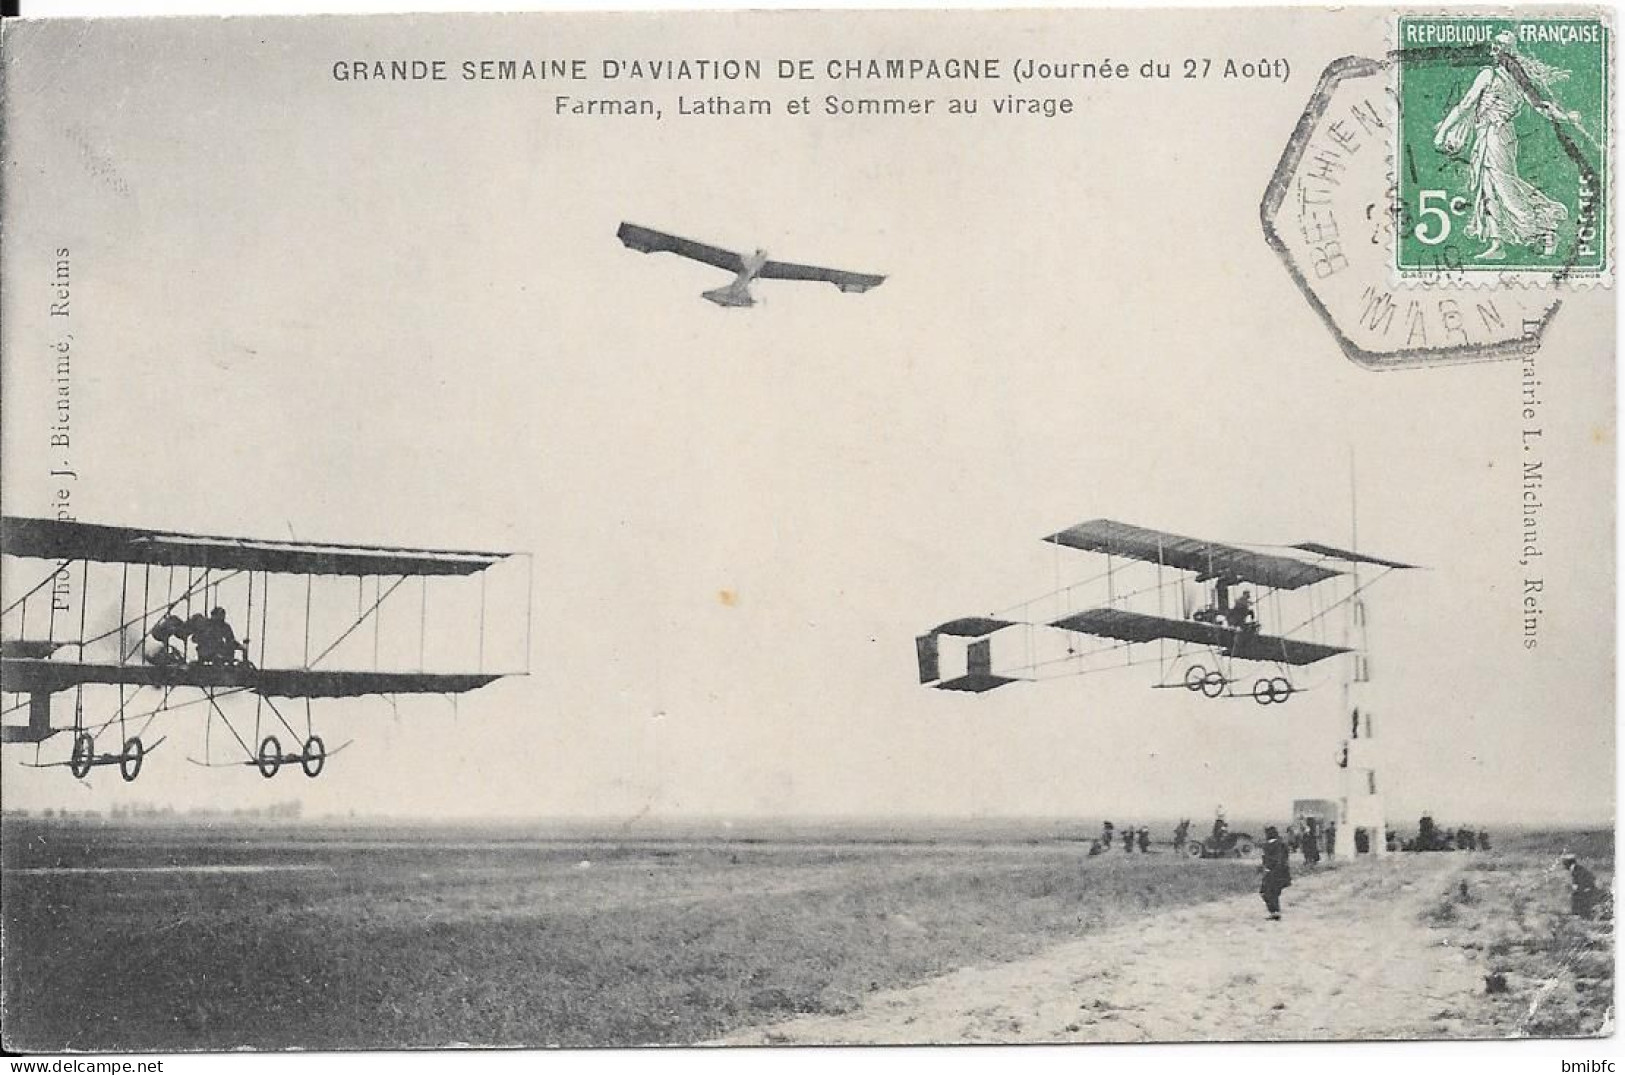 Grande Semaine D'Aviation De Champagne (Journée Du 27 Août) Farman , Latham Et Sommer Au Virage - Fliegertreffen